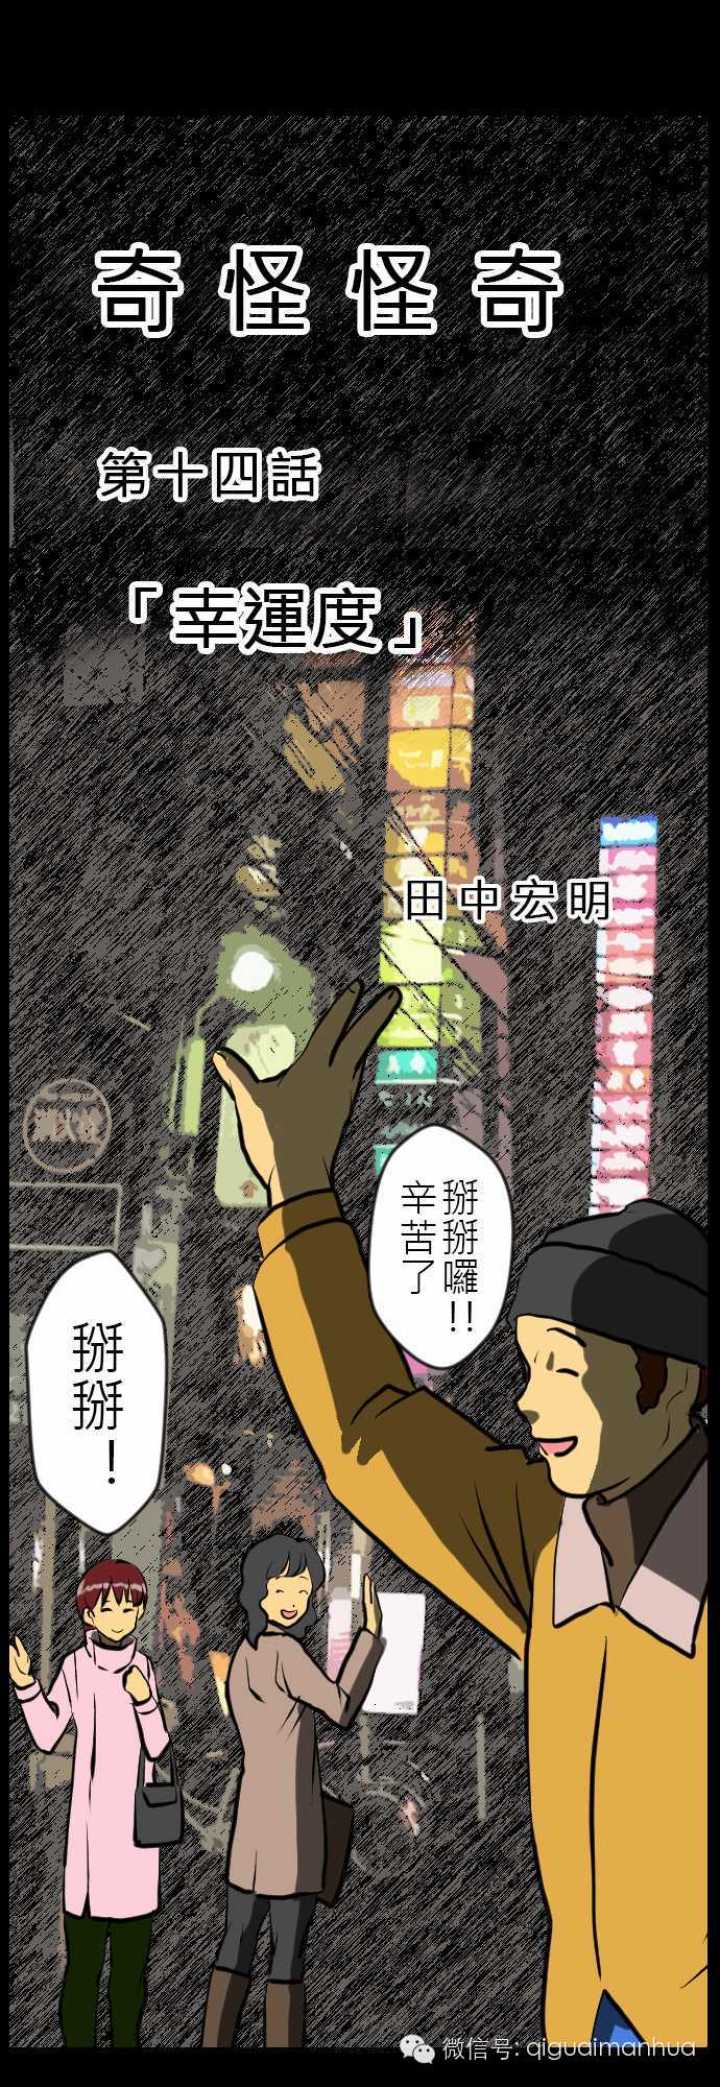 日本《幸运度》奇怪怪奇系列-黑白漫话